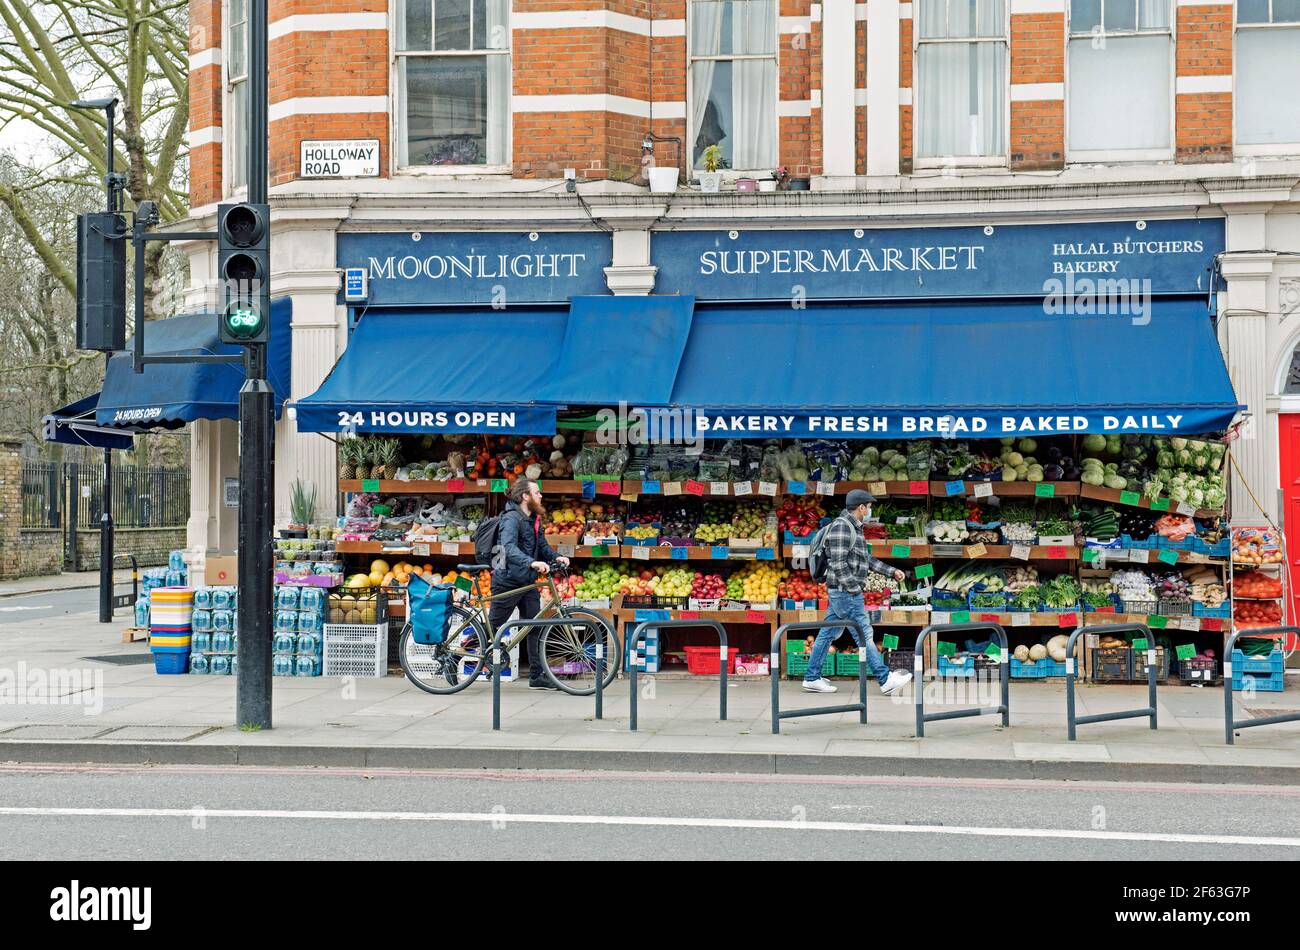 Moonlight Supermarkt mit Obst und Gemüse auf der Ausstellung Leute einschließlich Radfahrer vorbei, Holloway Road, London Borough of Islington. Stockfoto